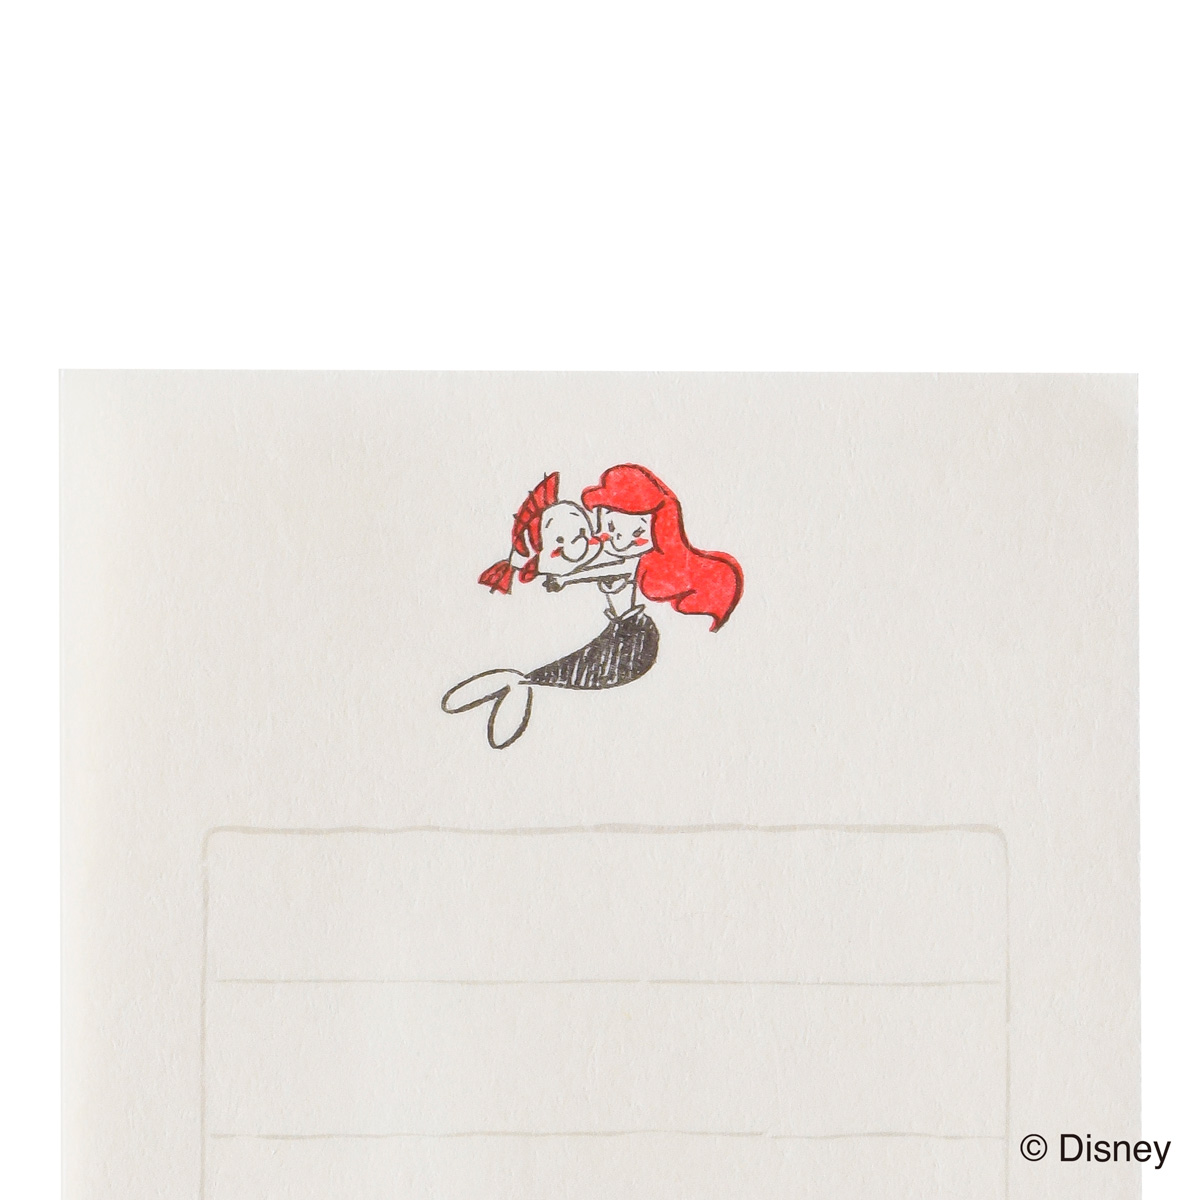 アリエル イラスト 可愛い アリエル ディズニーリトルマーメイドのイラストを描いてみた 可愛い雰囲気 How To Draw Ariel 아리엘을 그린